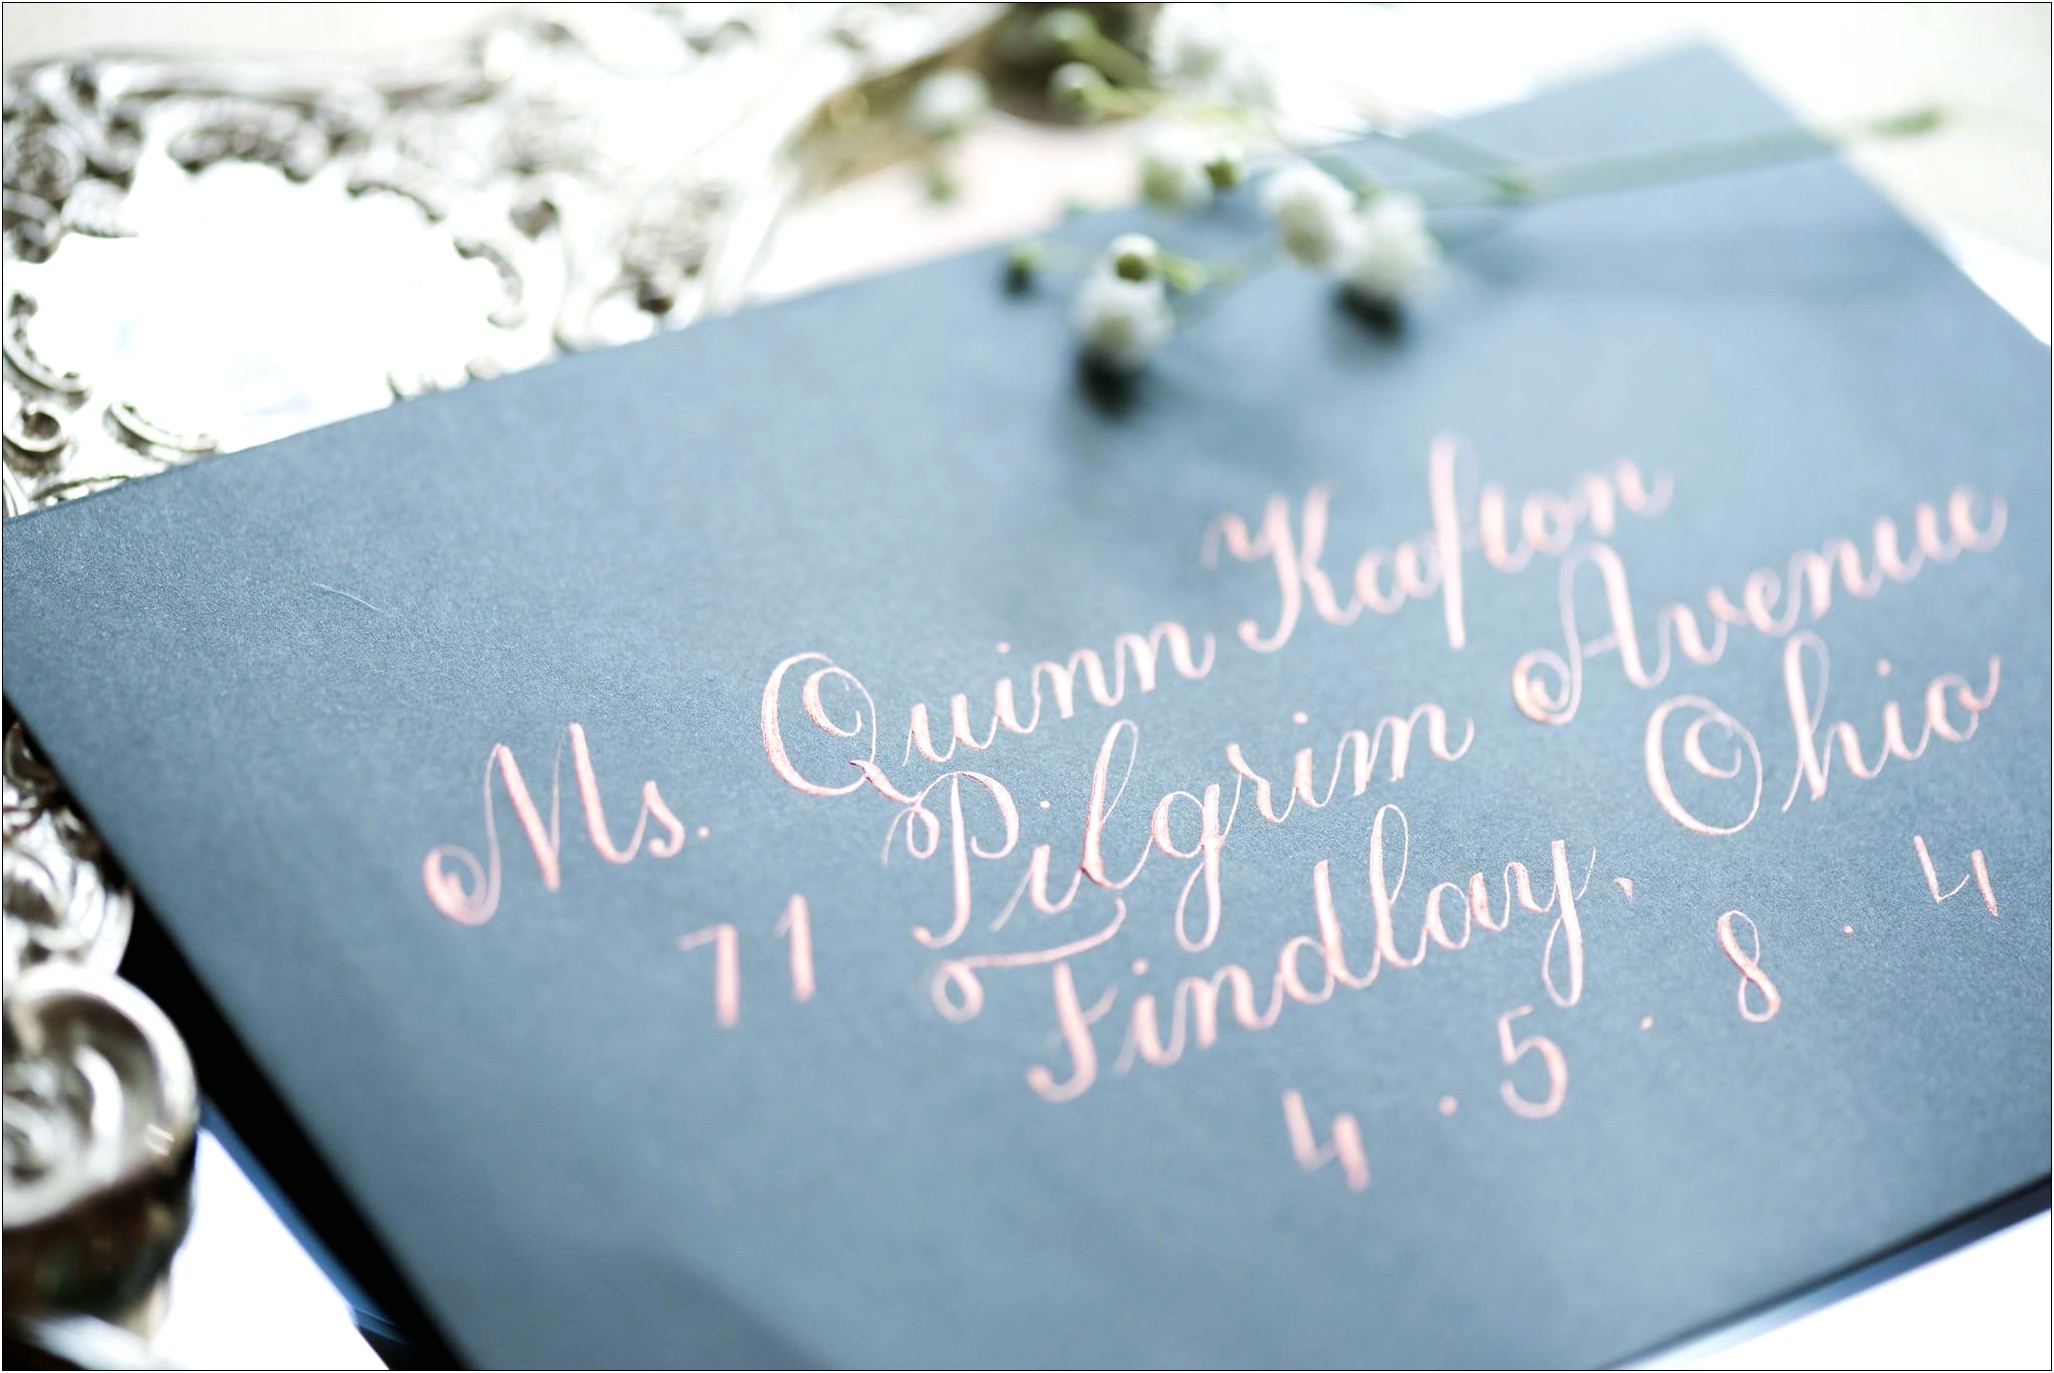 Etiquette For Addressing Wedding Invitations Inside Envelope